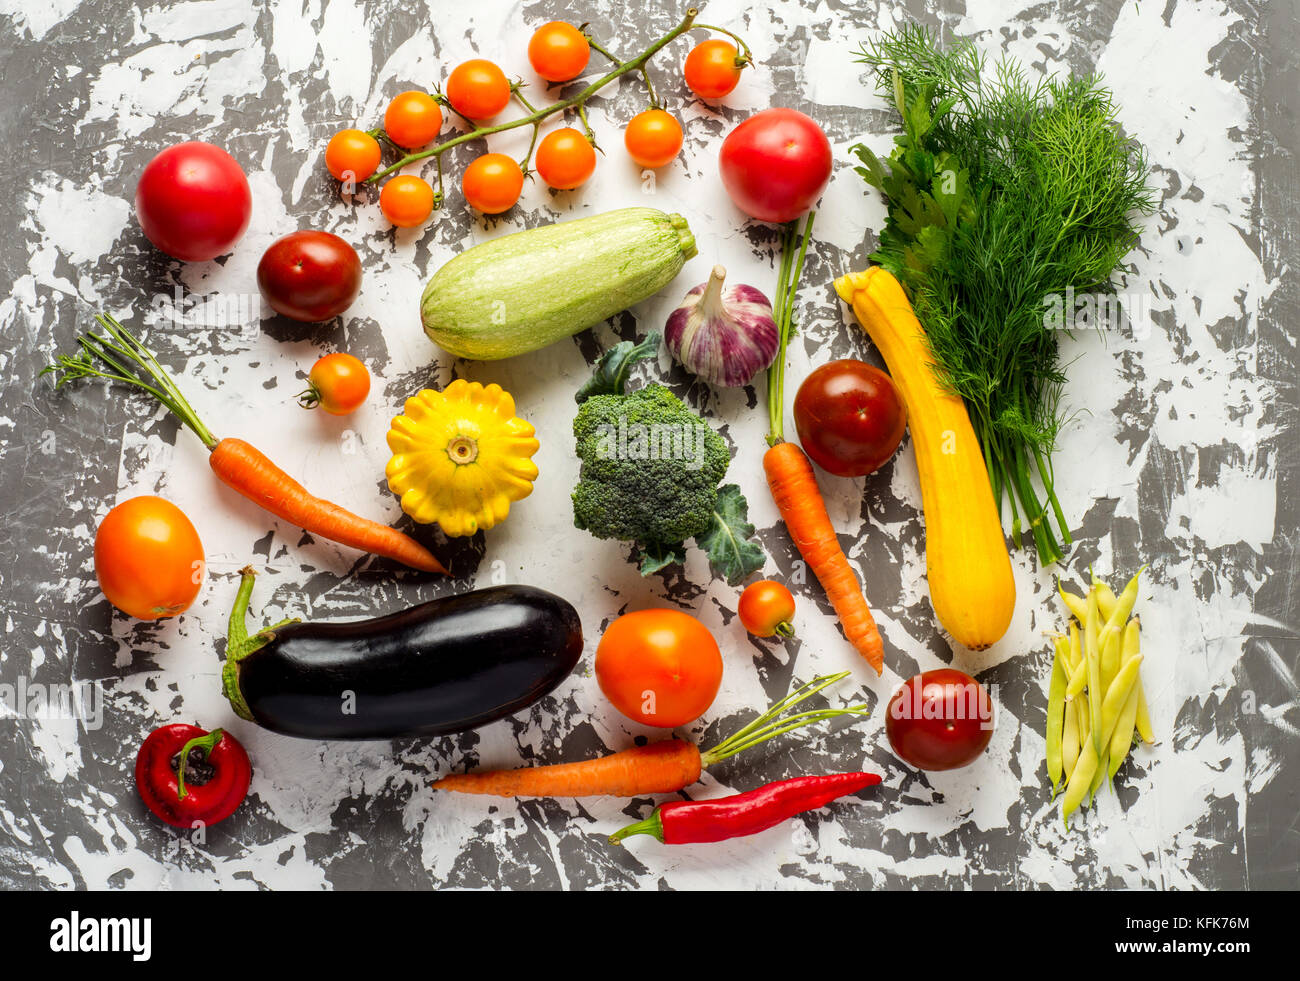 Materie verdure organiche con ingredienti freschi per cucinare in modo sano su calcestruzzo sfondo, vista dall'alto, banner. vegan o dieta alimenti concetto. Foto Stock